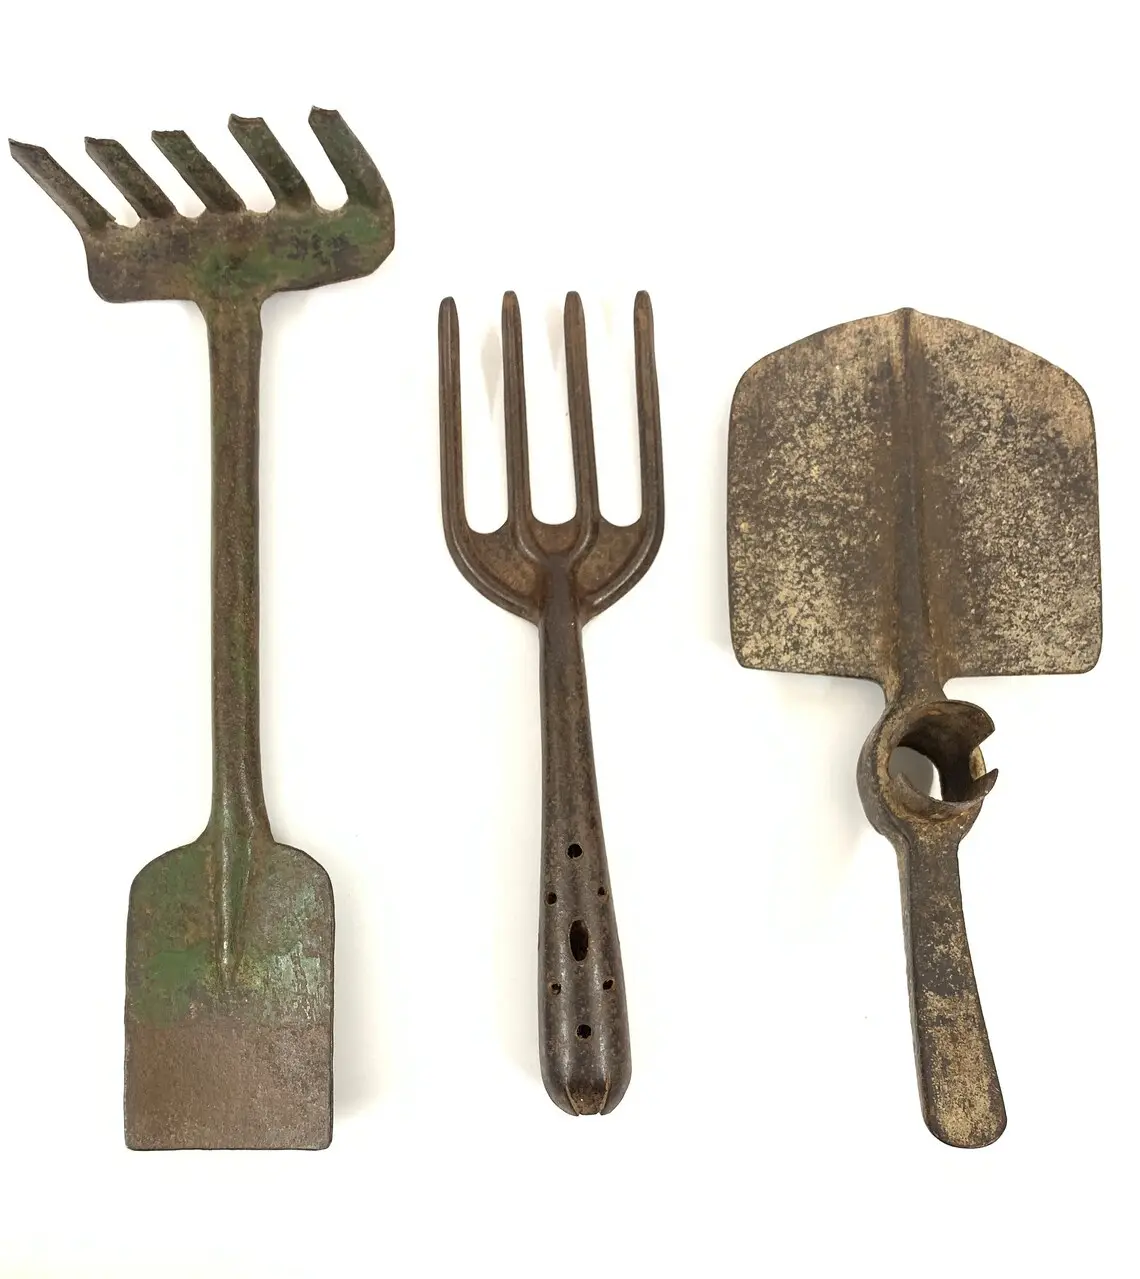 أدوات حديقة حديدية مصنوعة يدويًا للزراعة في المنزل أو أدوات يدوية خارجية استخدام البستنة والزراعة بالجملة ،